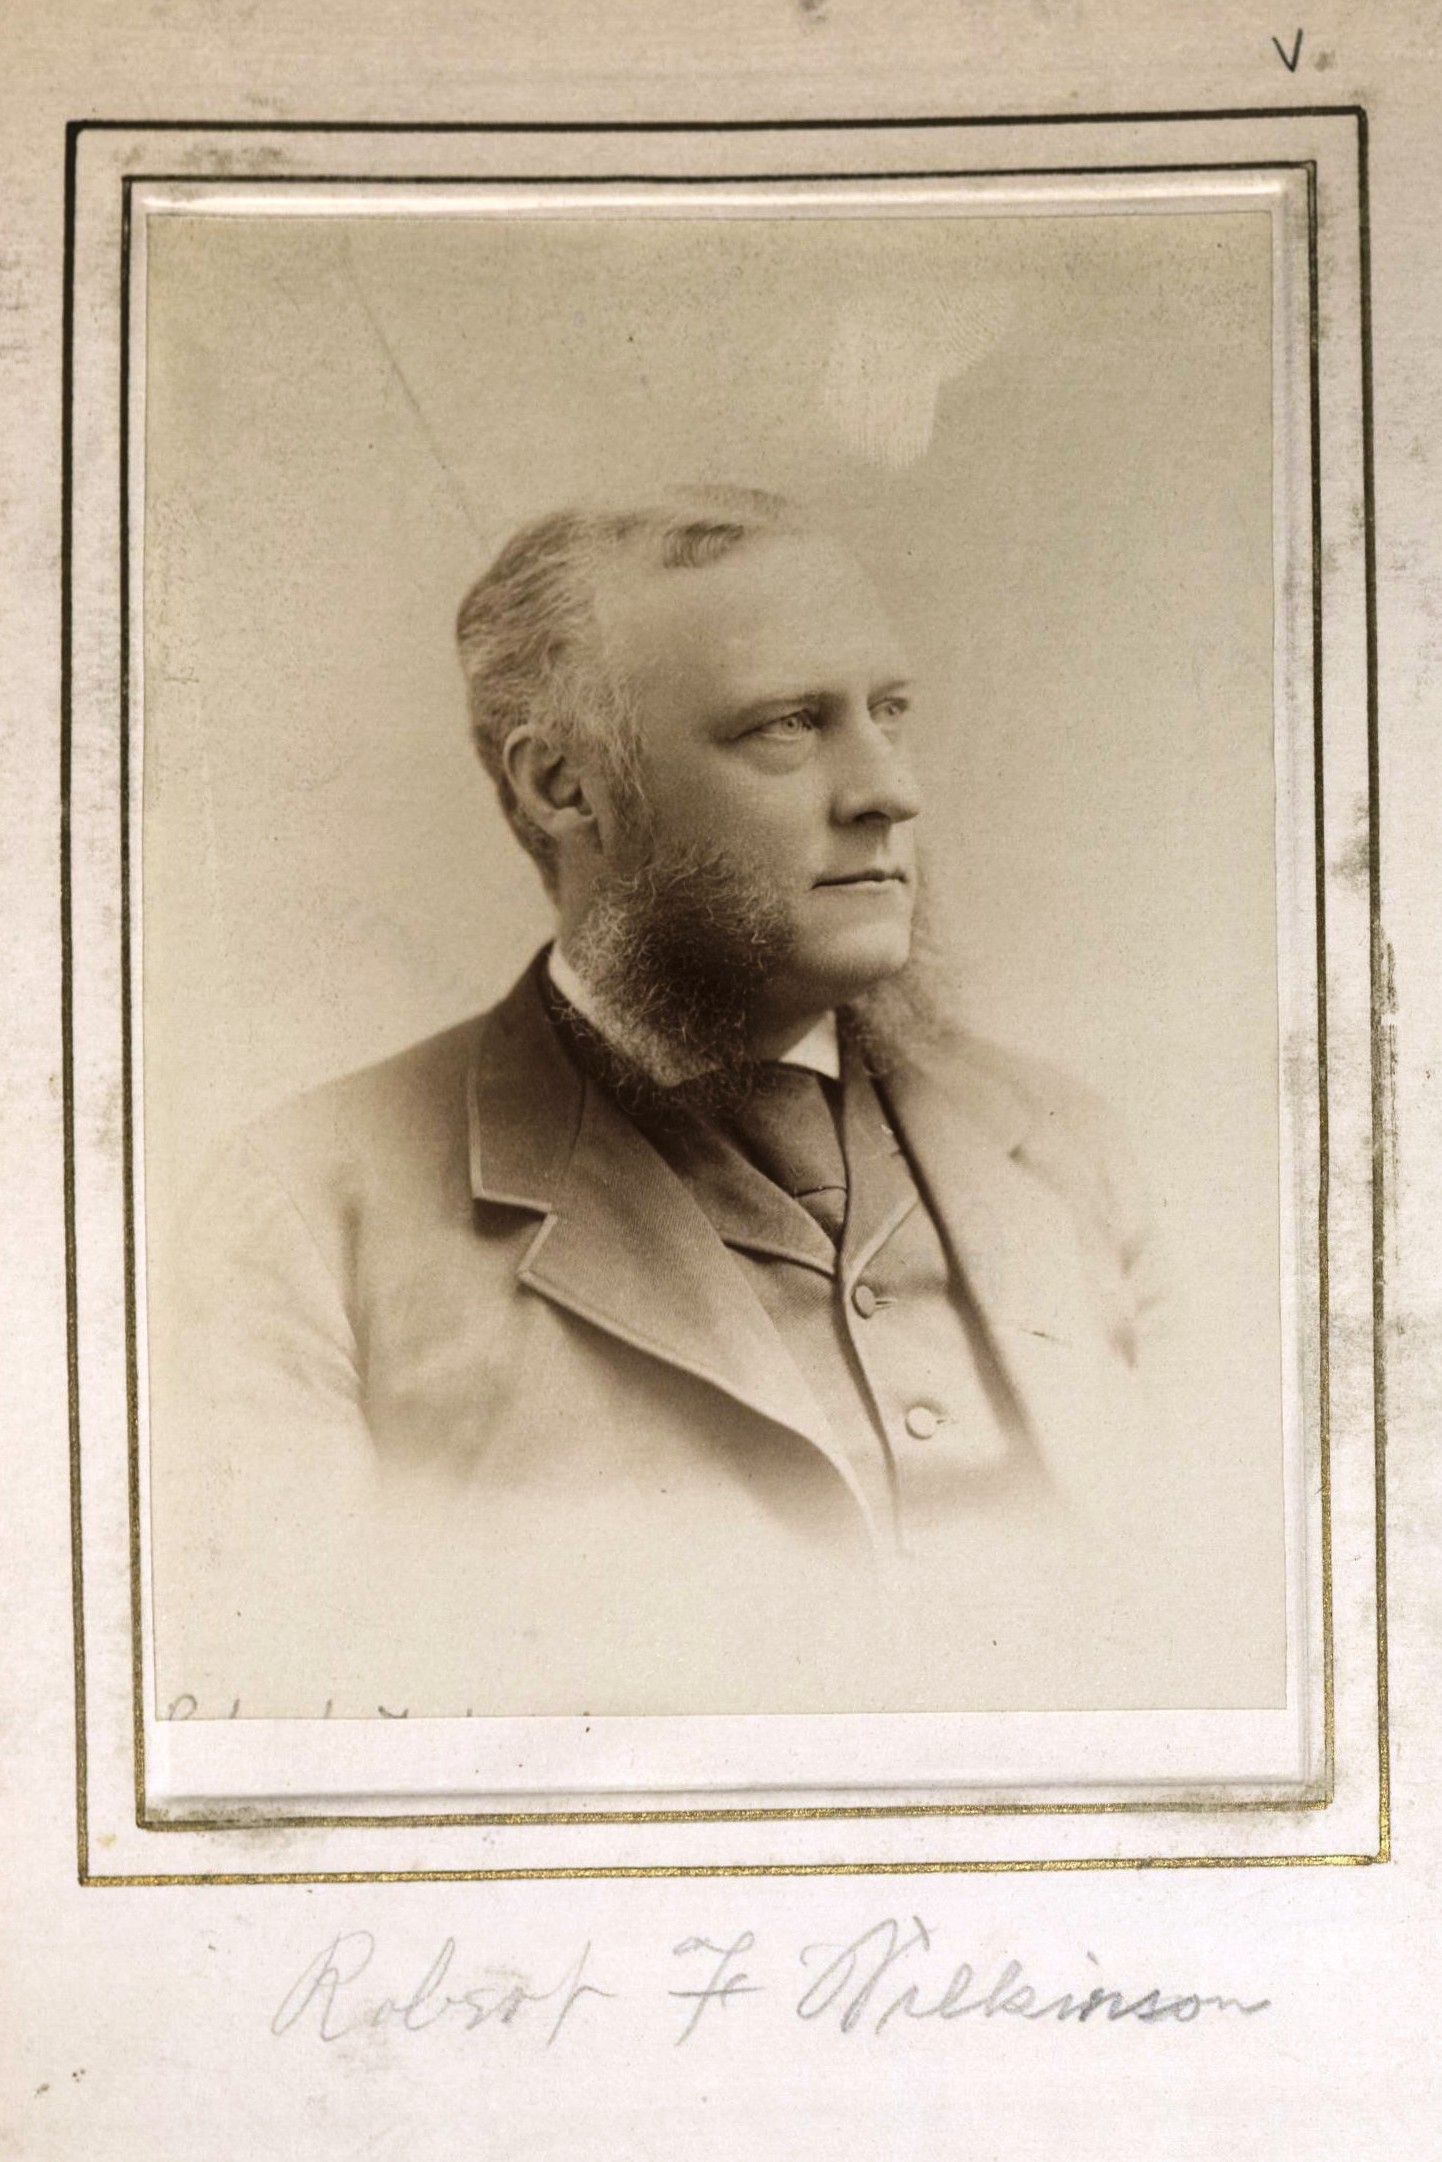 Member portrait of Robert F. Wilkinson